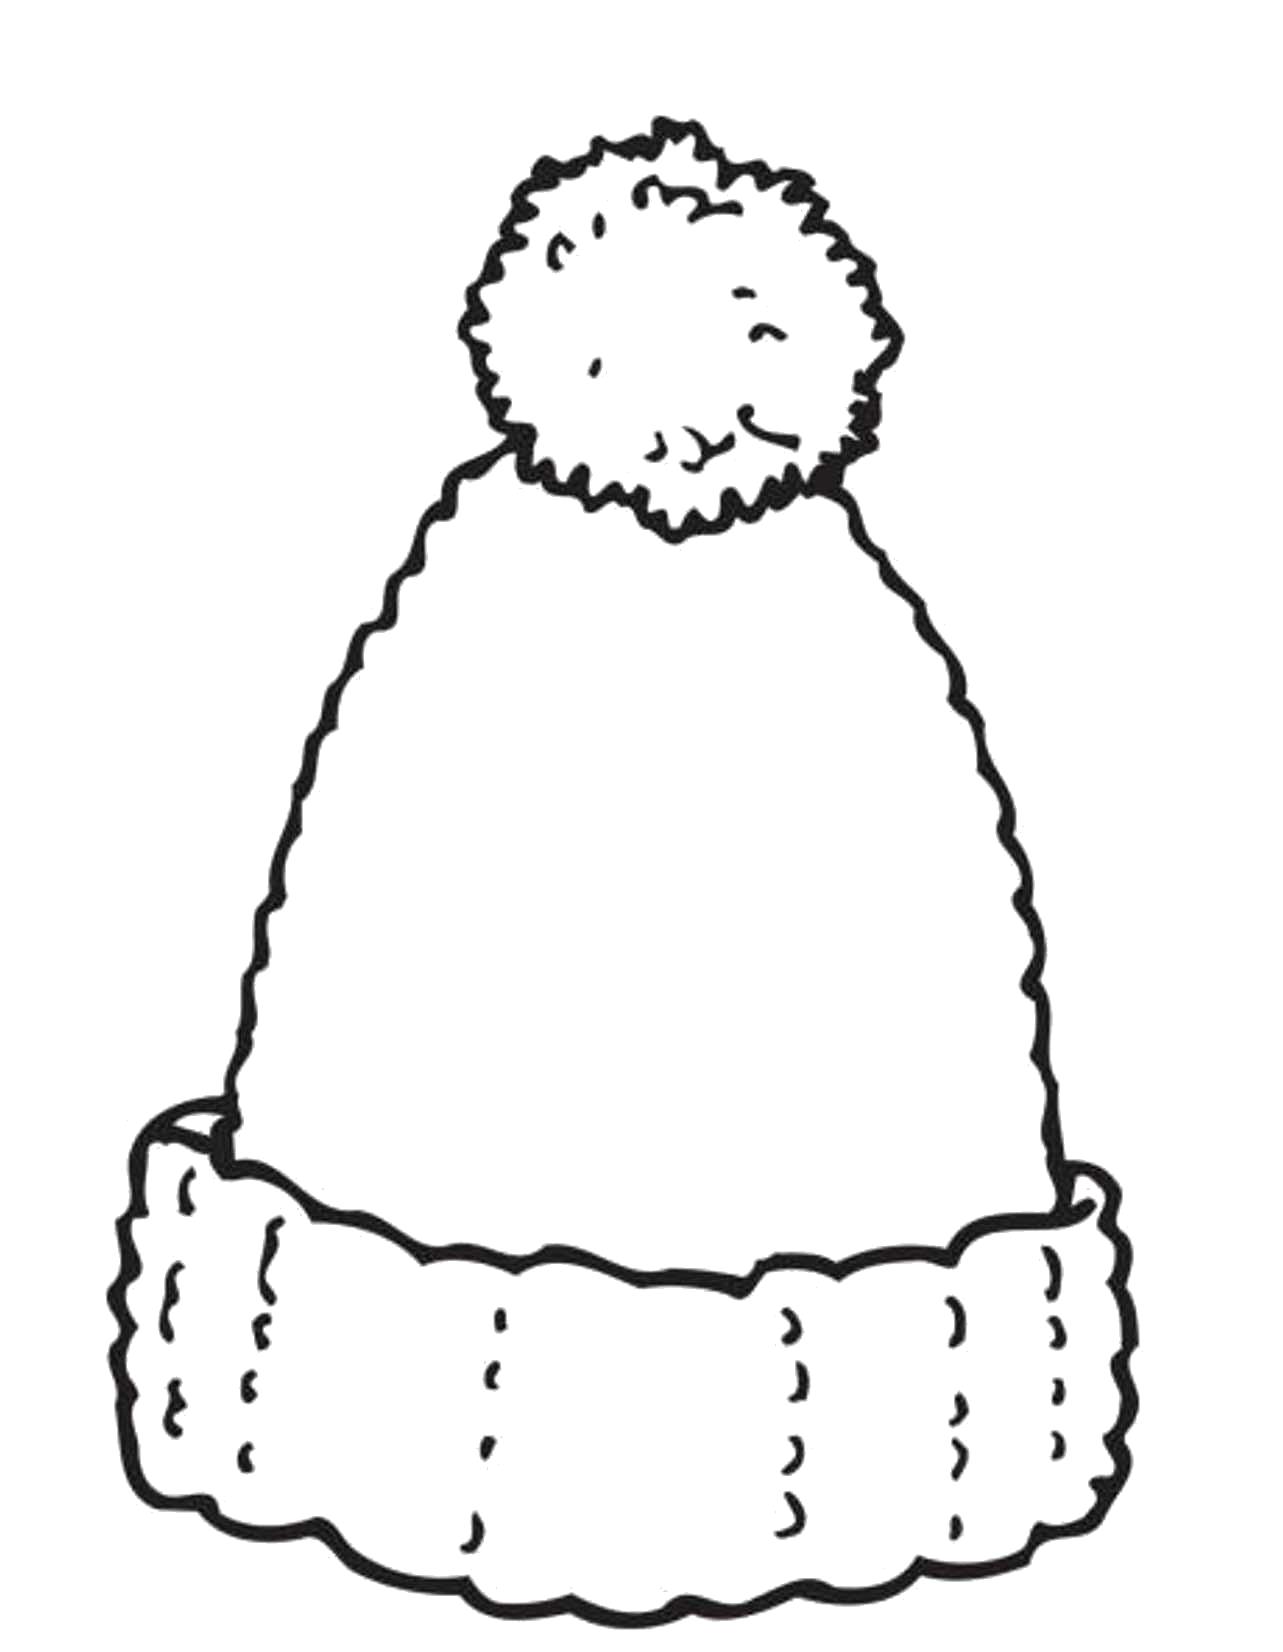 Название: Раскраска Раскраска шапочка. Категория: Зимняя одежда. Теги: Зимняя одежда.